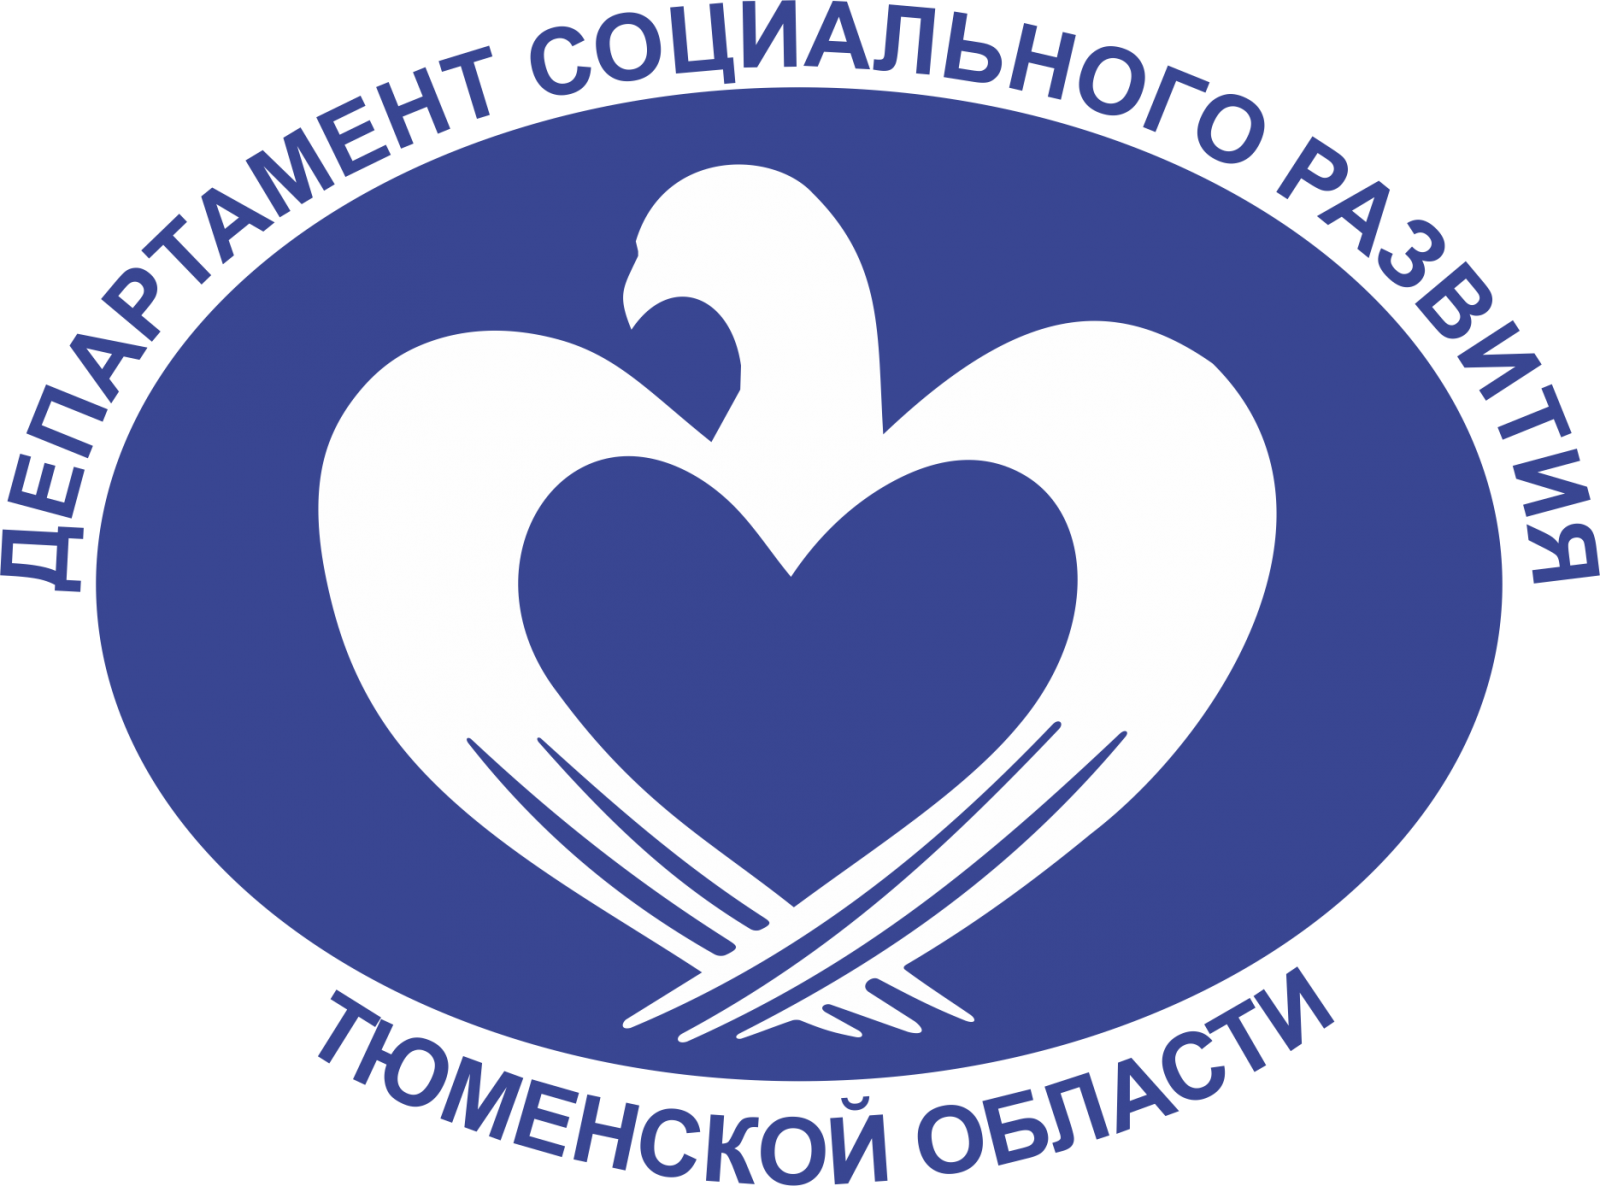 Департамент социального развития Тюменского области